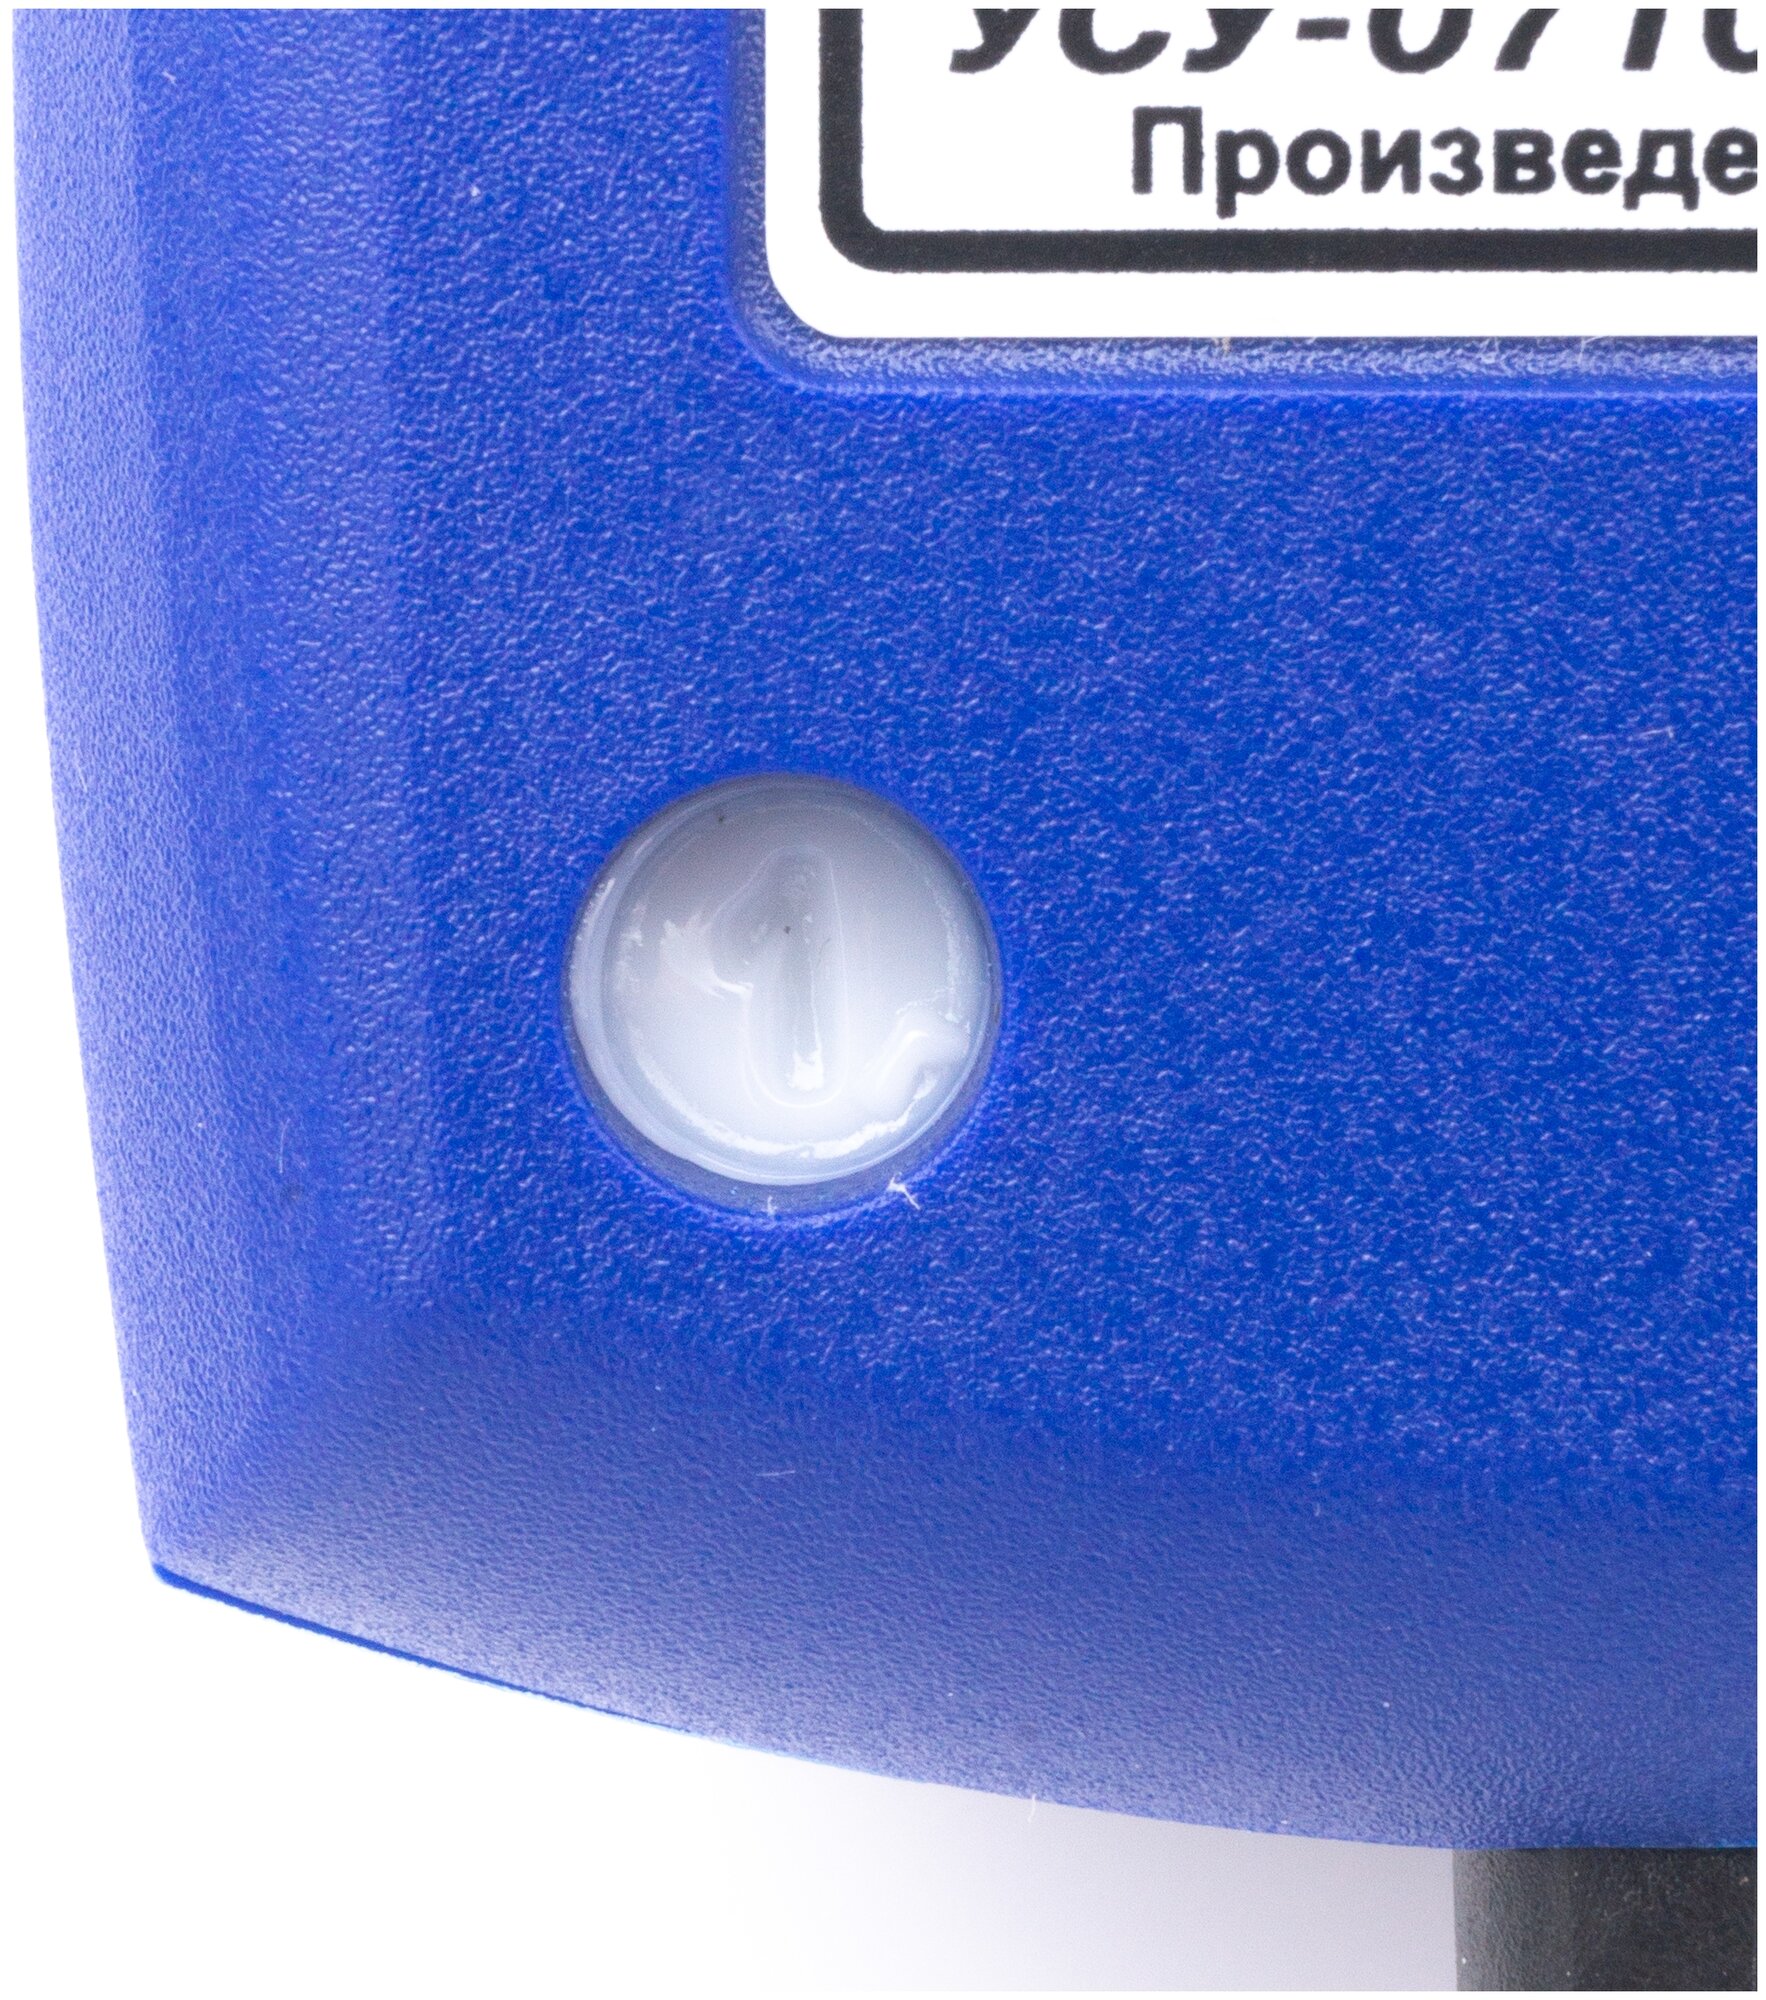 Ультразвуковое устройство для стирки Ретон УСУ-0710Т-01